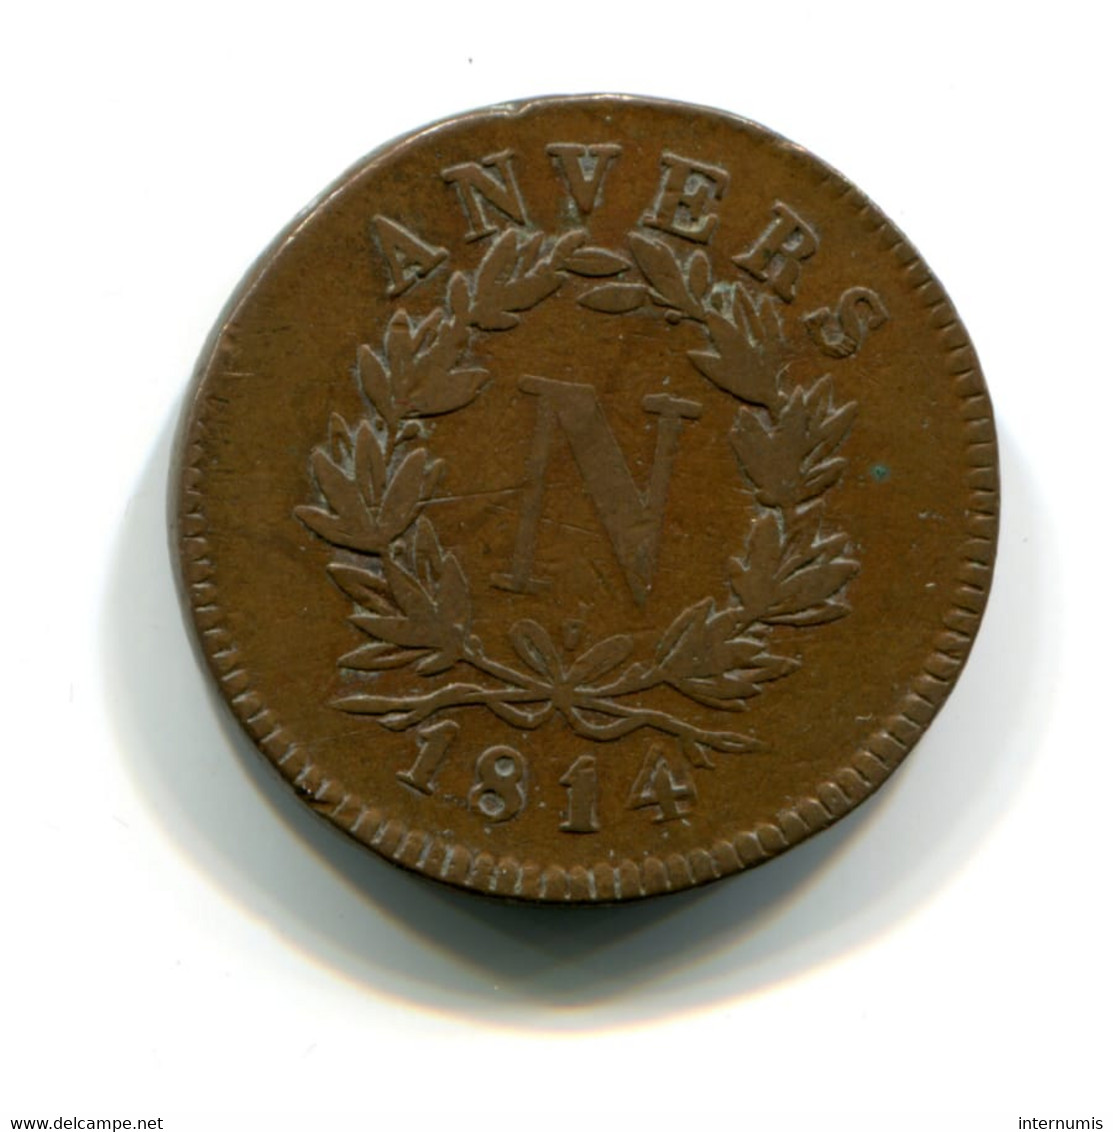 Belgique / Belgium, 5 Centimes, 1814-V, Siege D'Anvers - Napoléon, Bronze, WOLSCHOT, KM#2, F.115B/2, G.129b, COL.10a - 1814 Siège D’Anvers